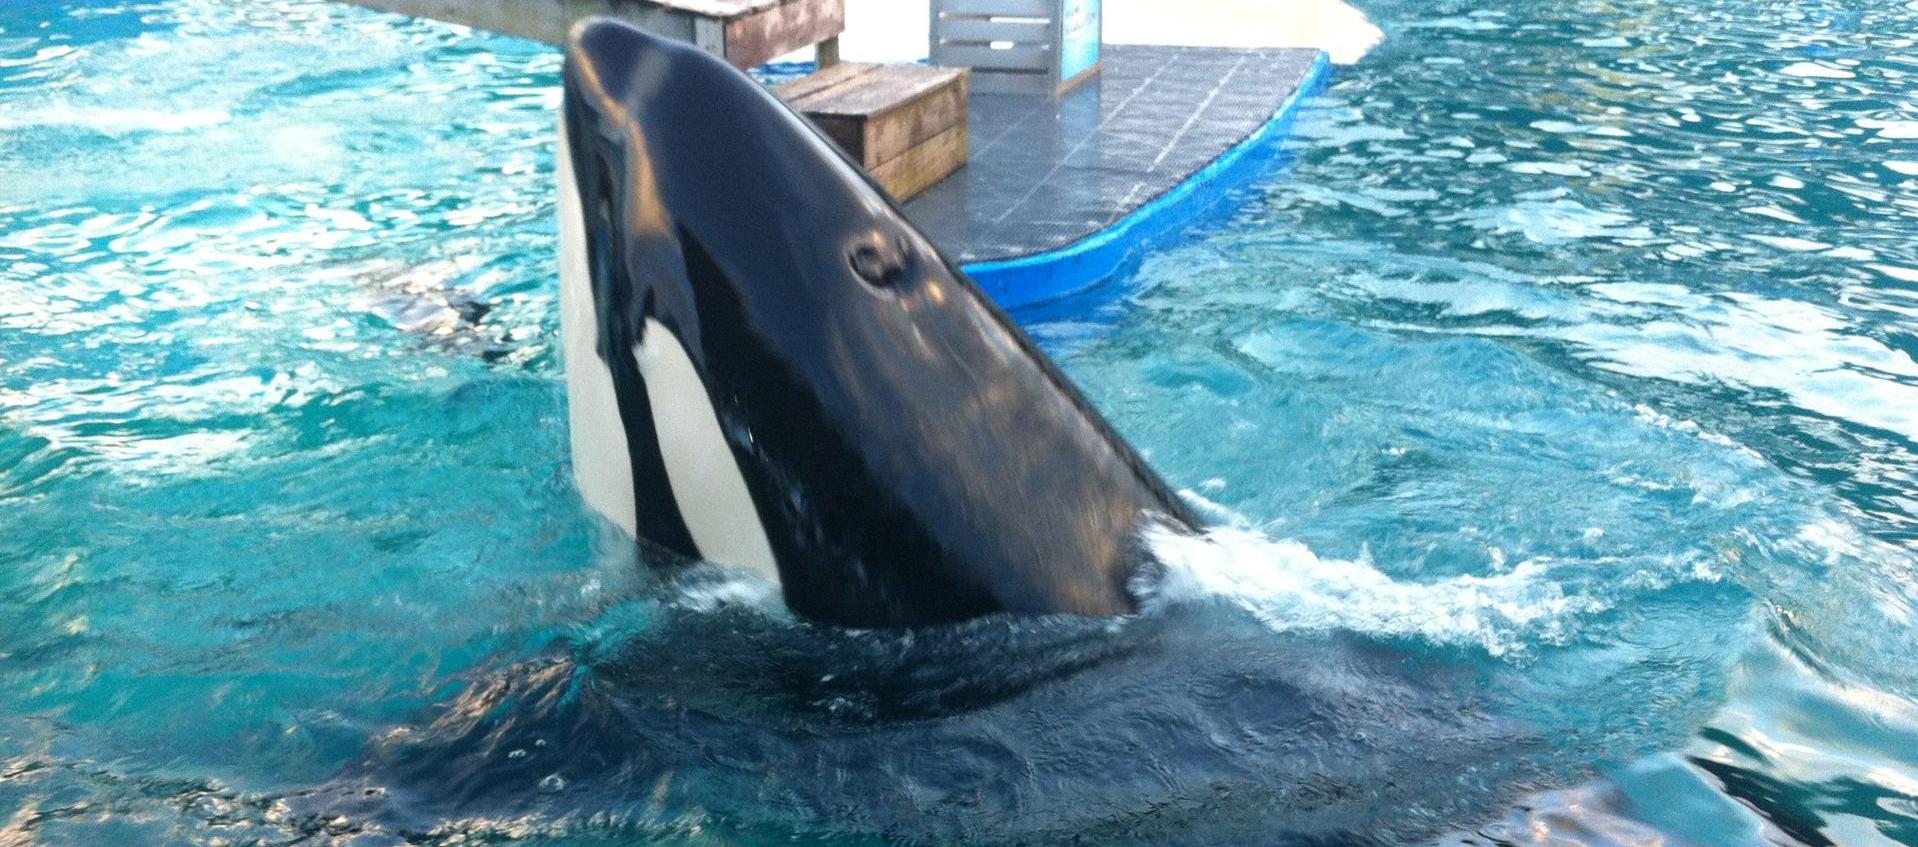 La orca 'Lolita' durante uno de sus espectáculos en el Miami Seaquarium